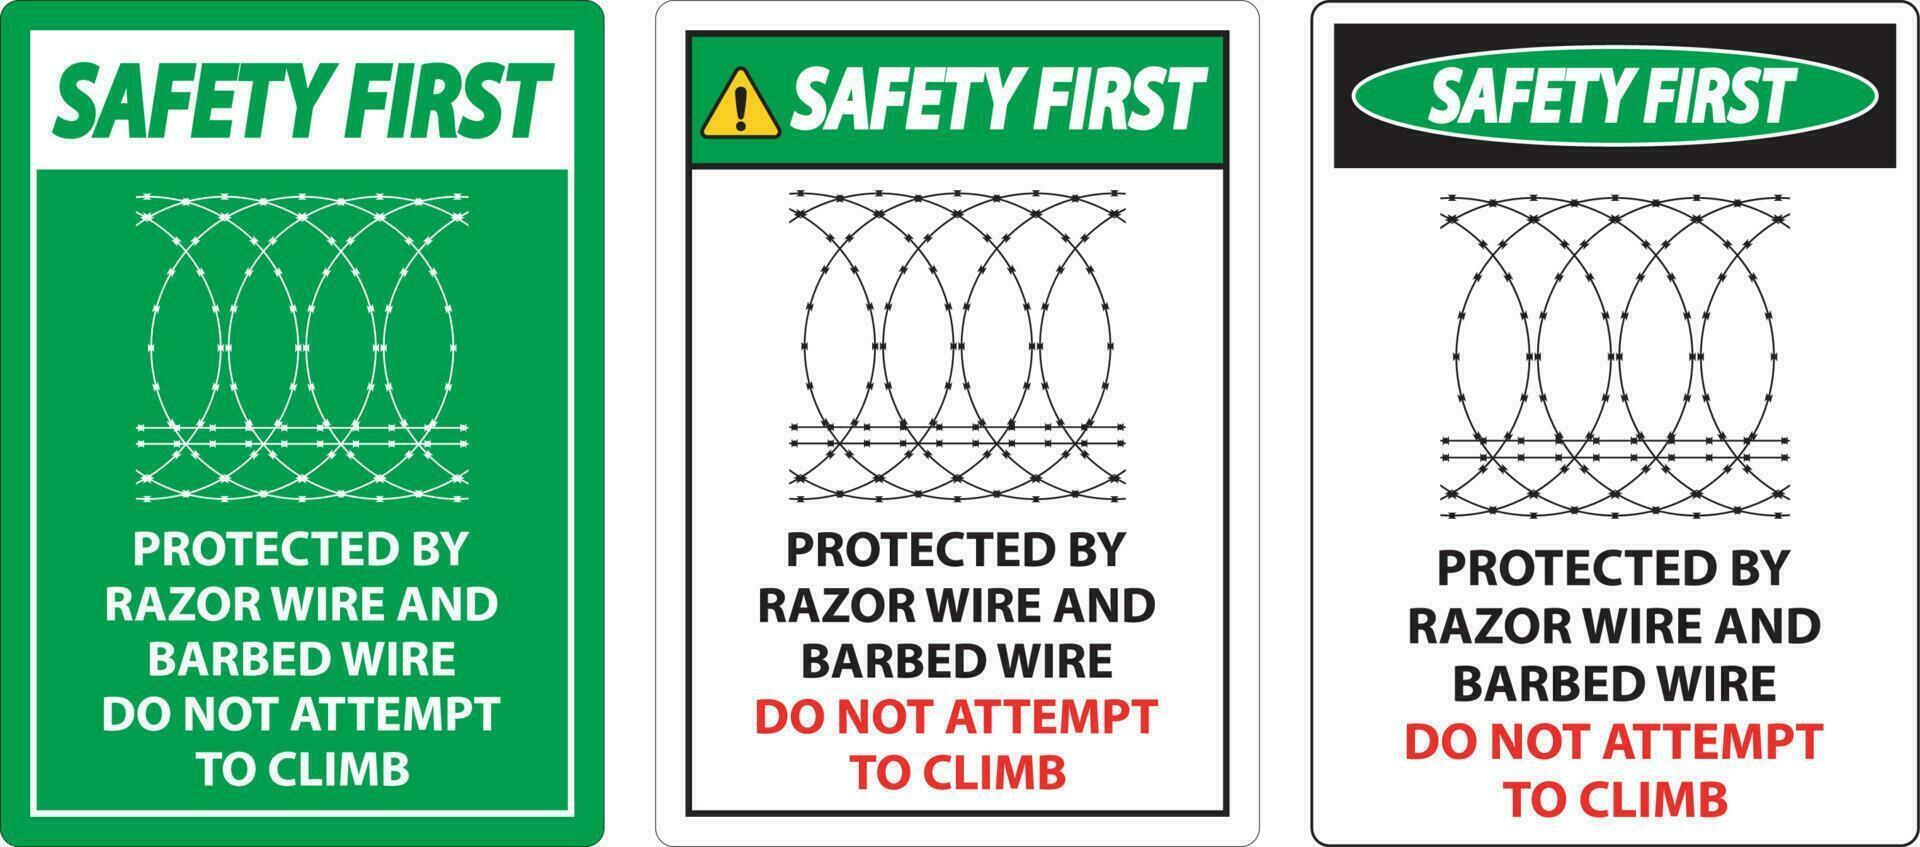 sicurezza primo protetta di rasoio filo e spinato filo, fare non scalata cartello vettore